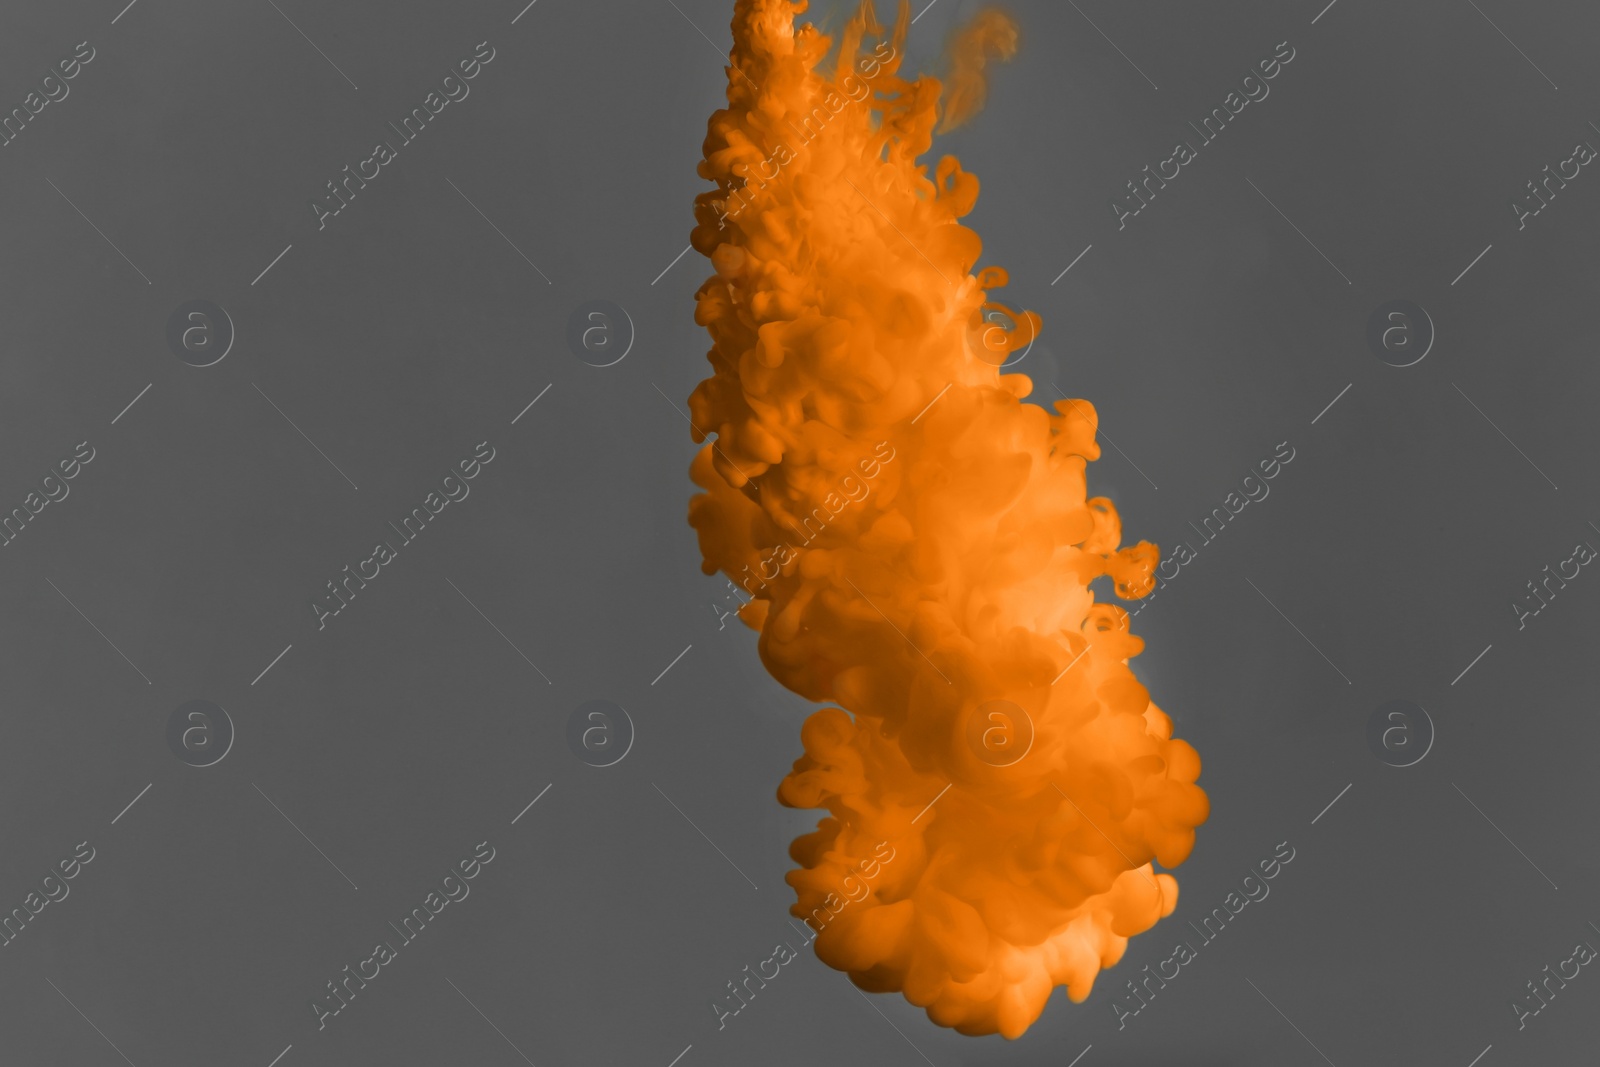 Photo of Splash of orange ink on grey background